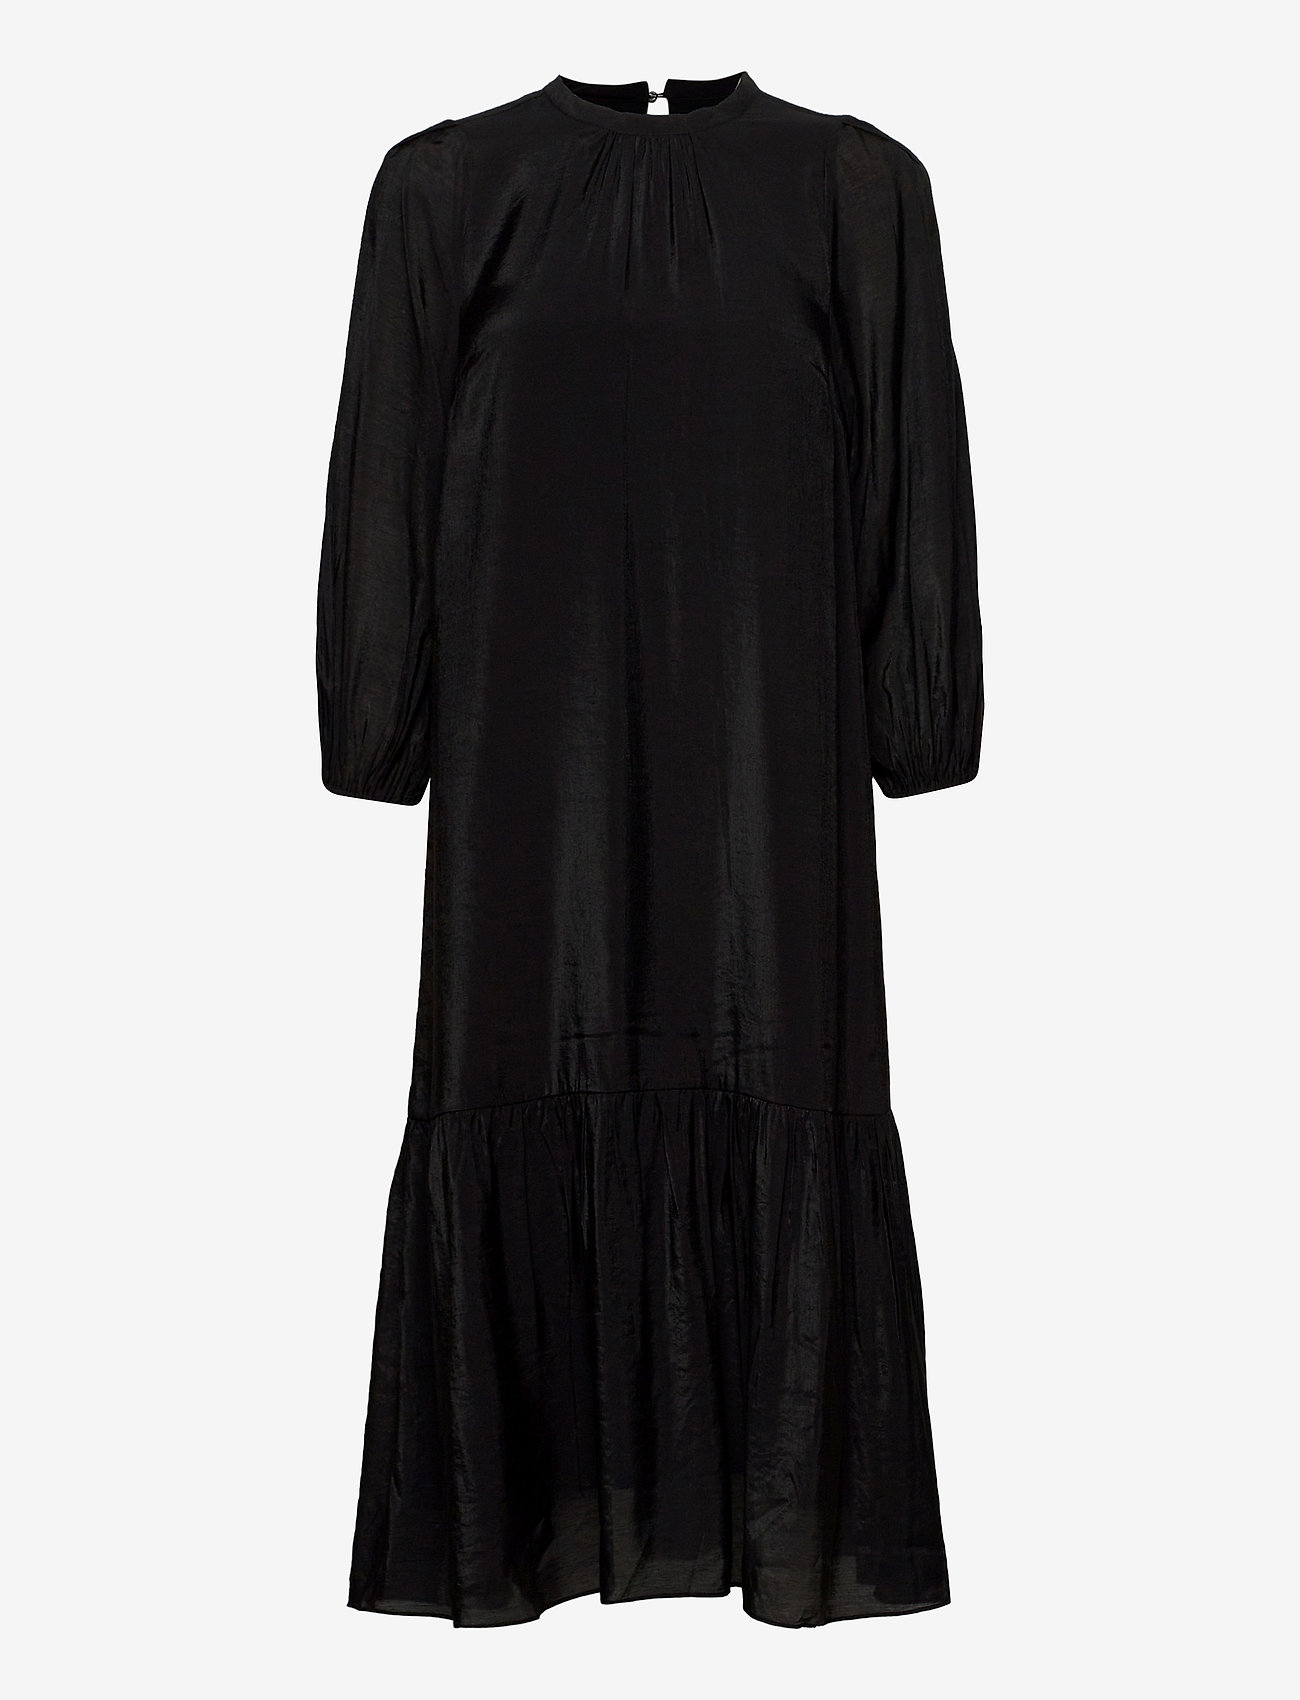 InWear - PoppyIW Dress - midiklänningar - black - 0